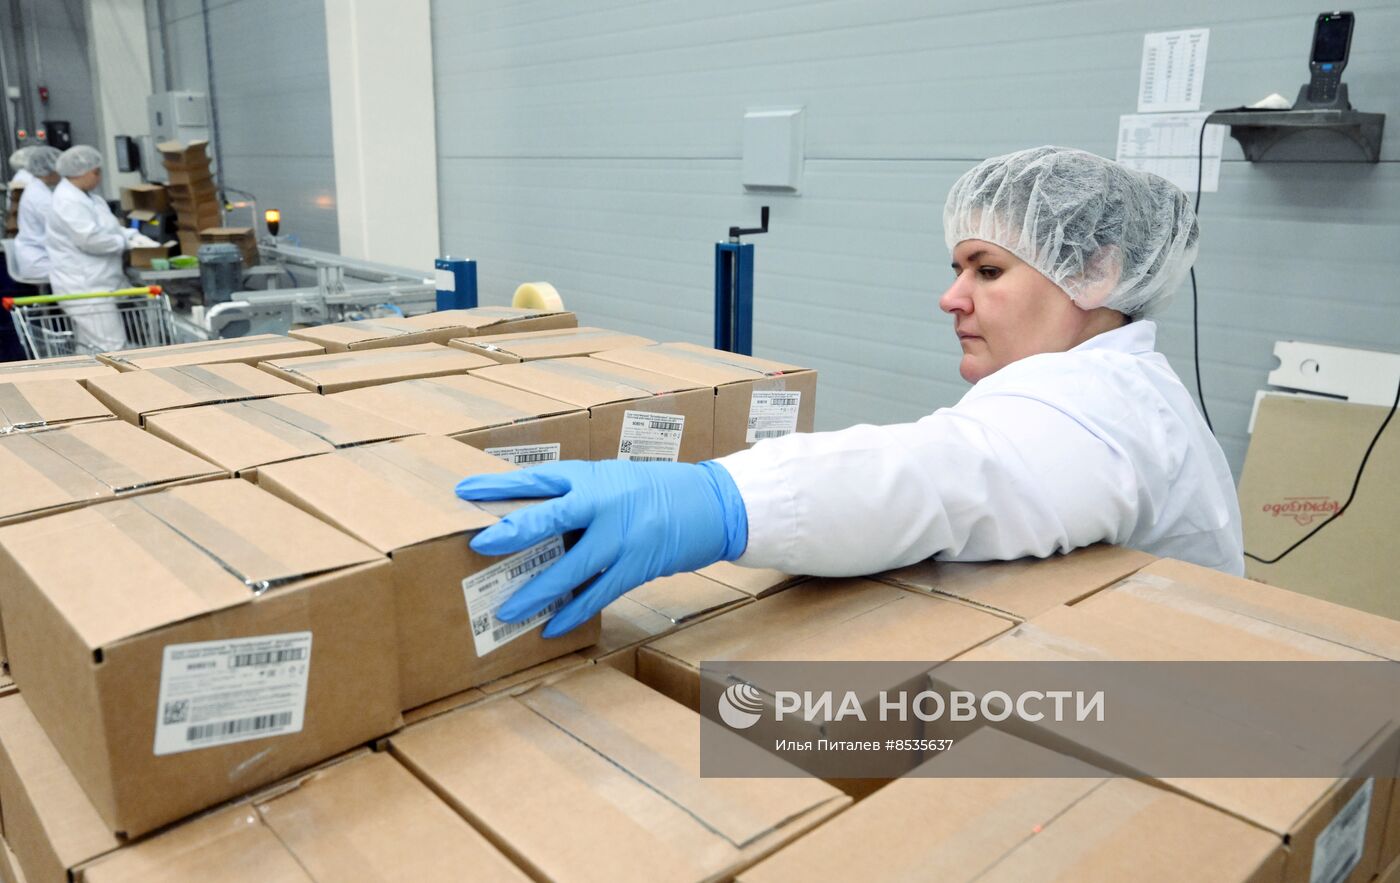 Производство молочной продукции на заводе Viola в Подмосковье